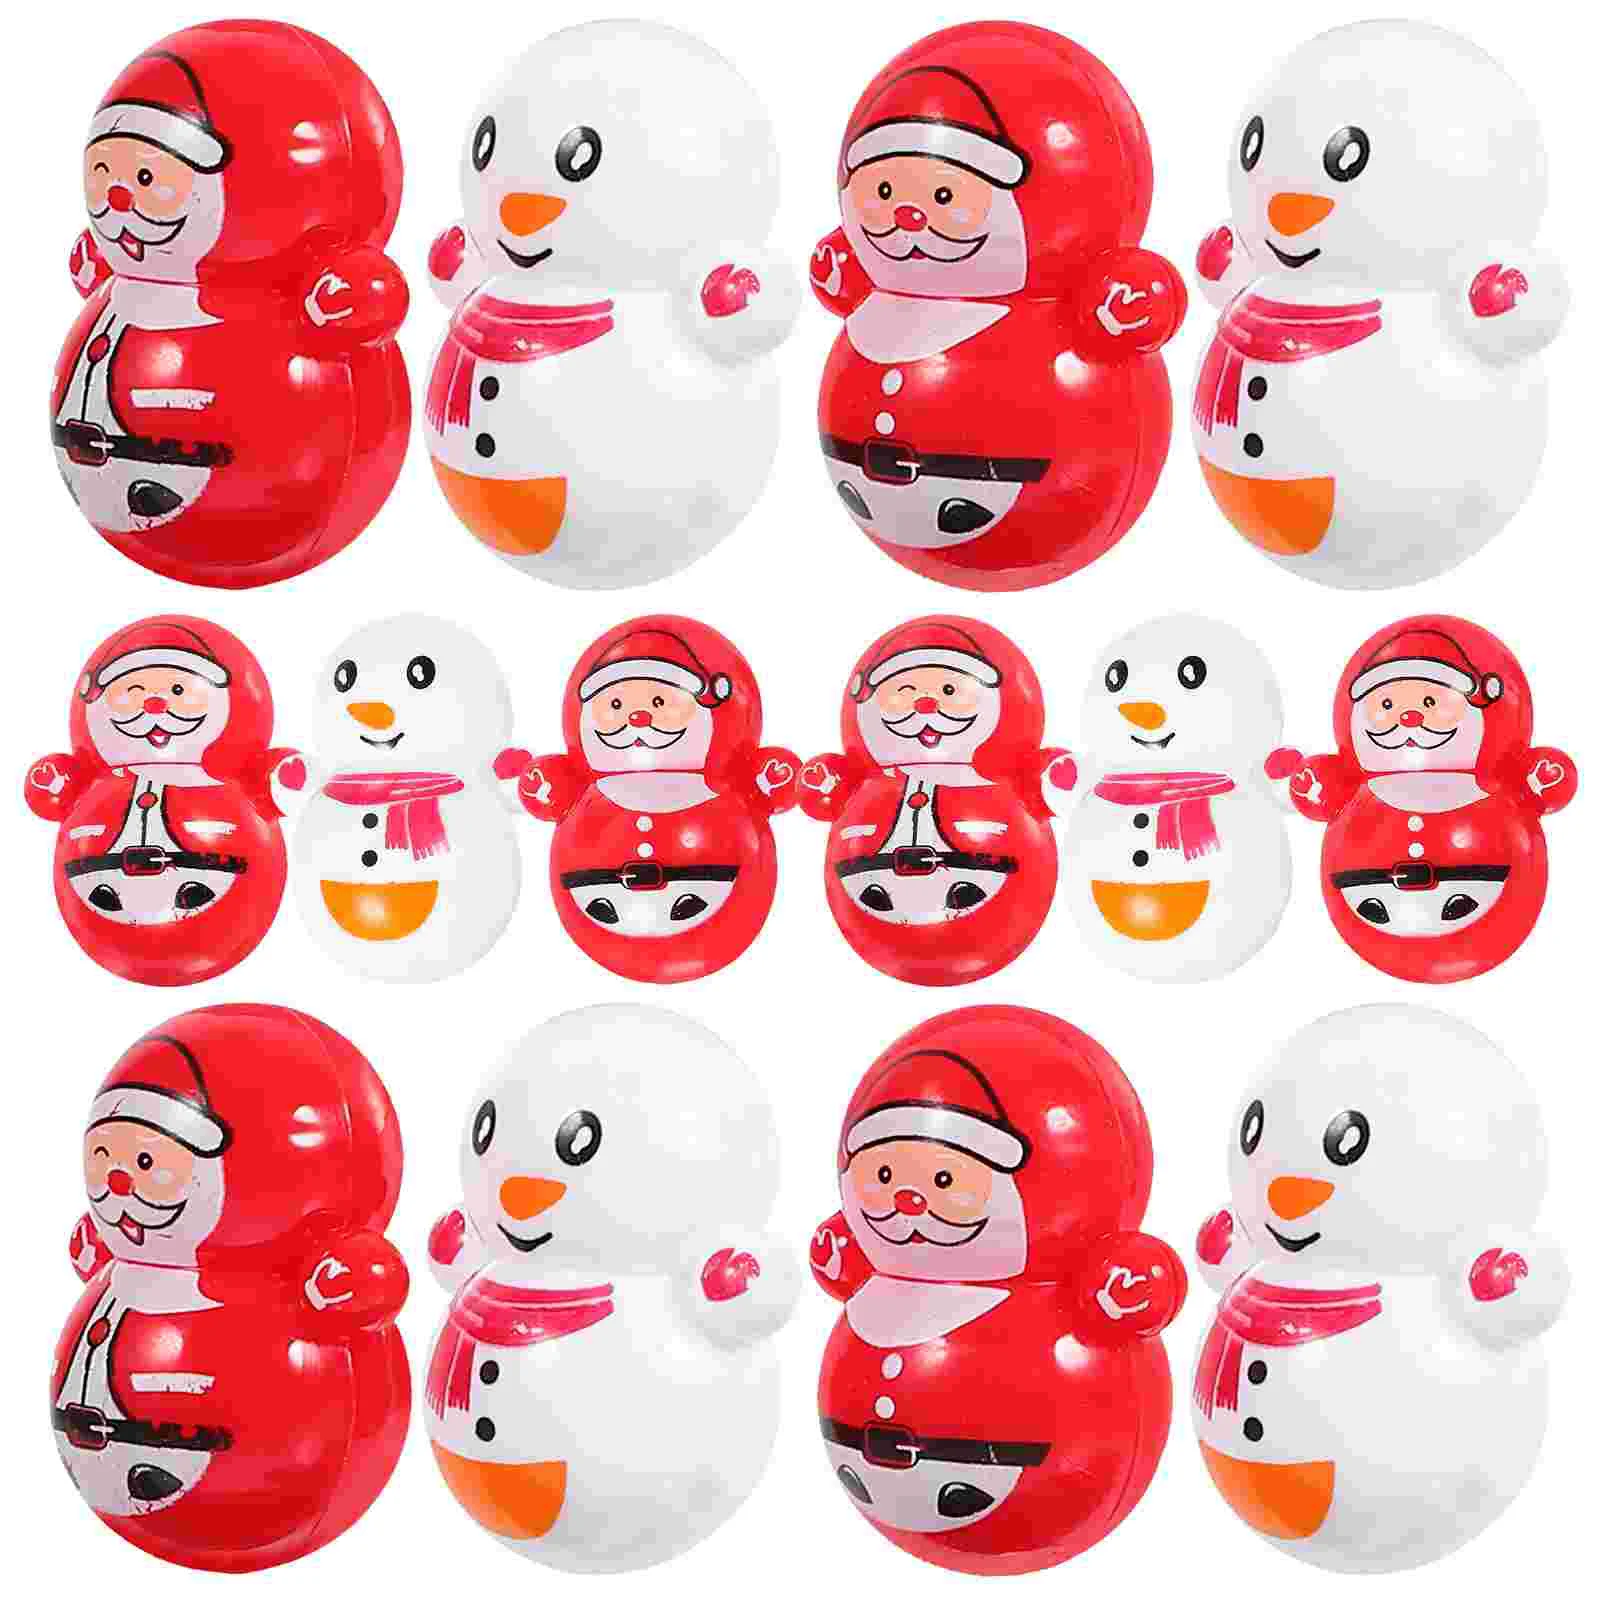 

60pcs Delicate Santa Claus Tumbler Ornaments Adorable Snowman Desktop Ornaments